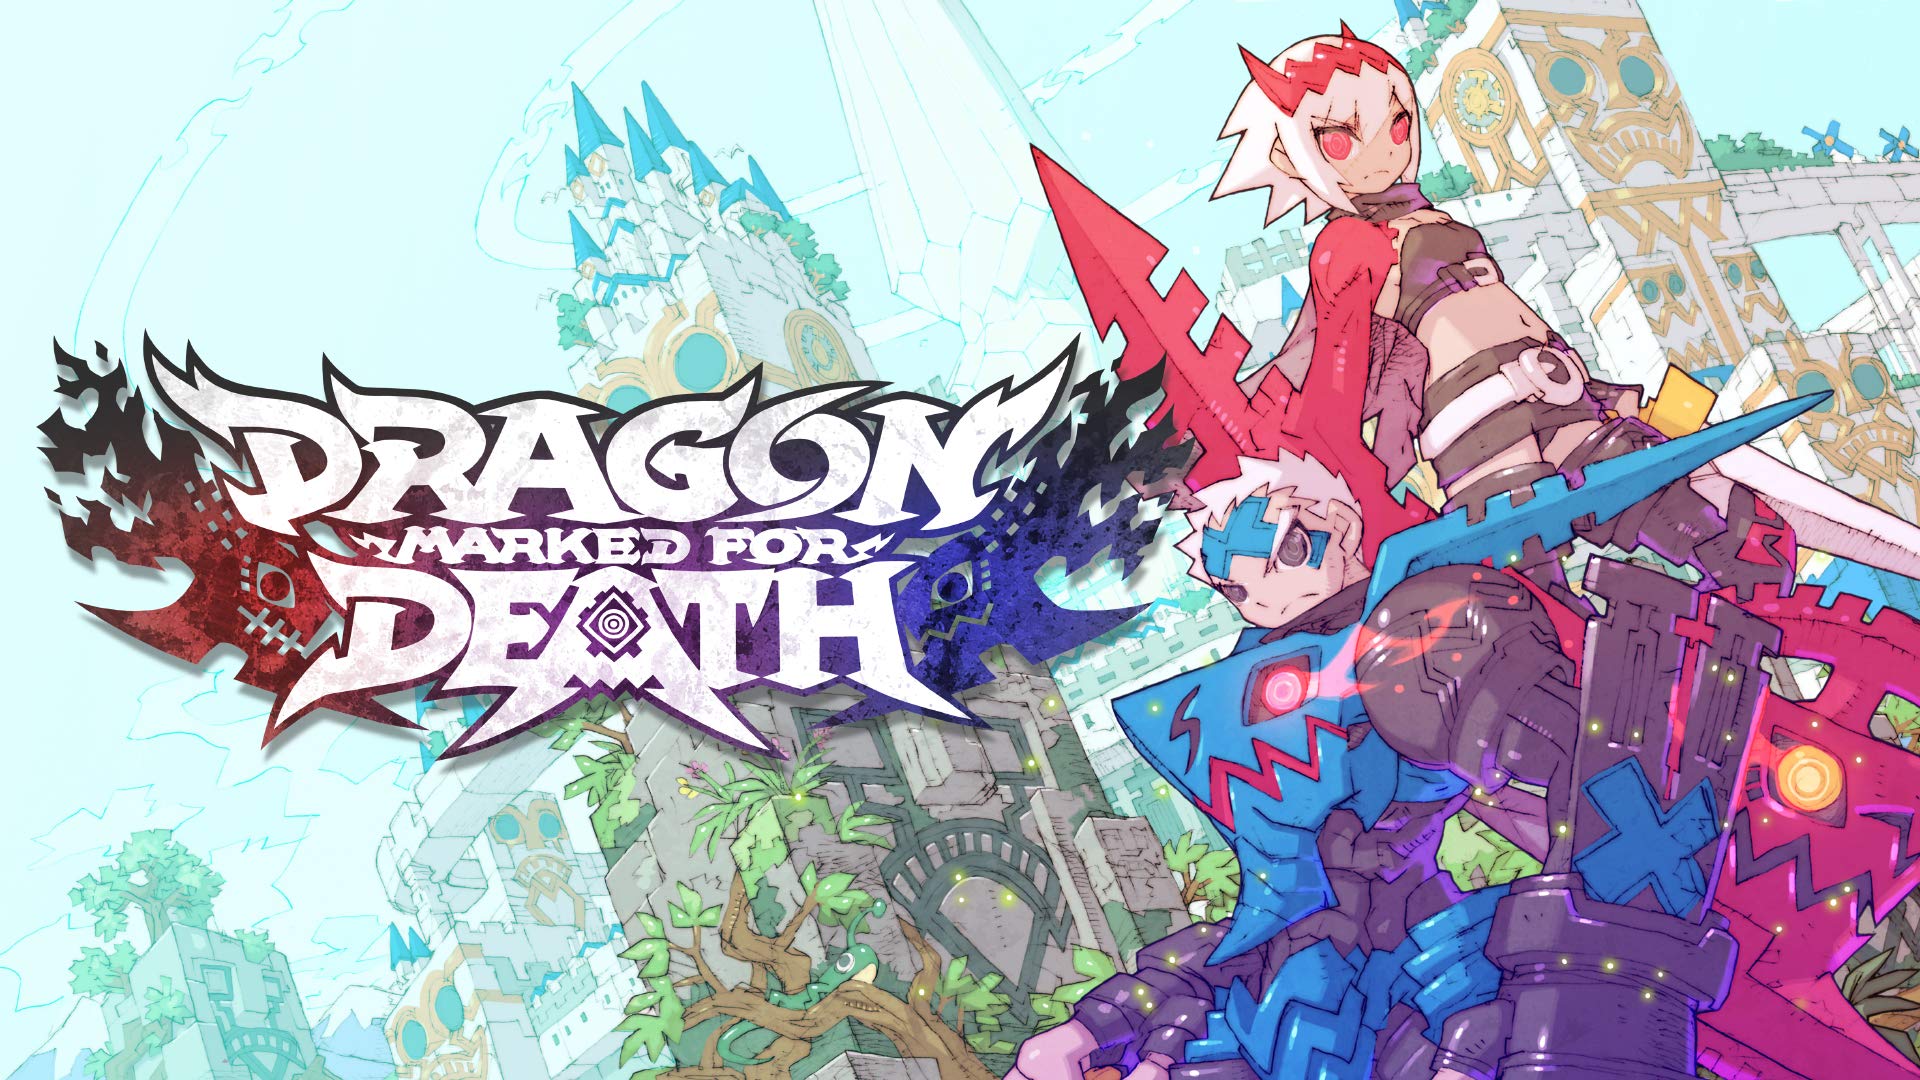 Dragon Marked For Death: cómo personalizar personajes